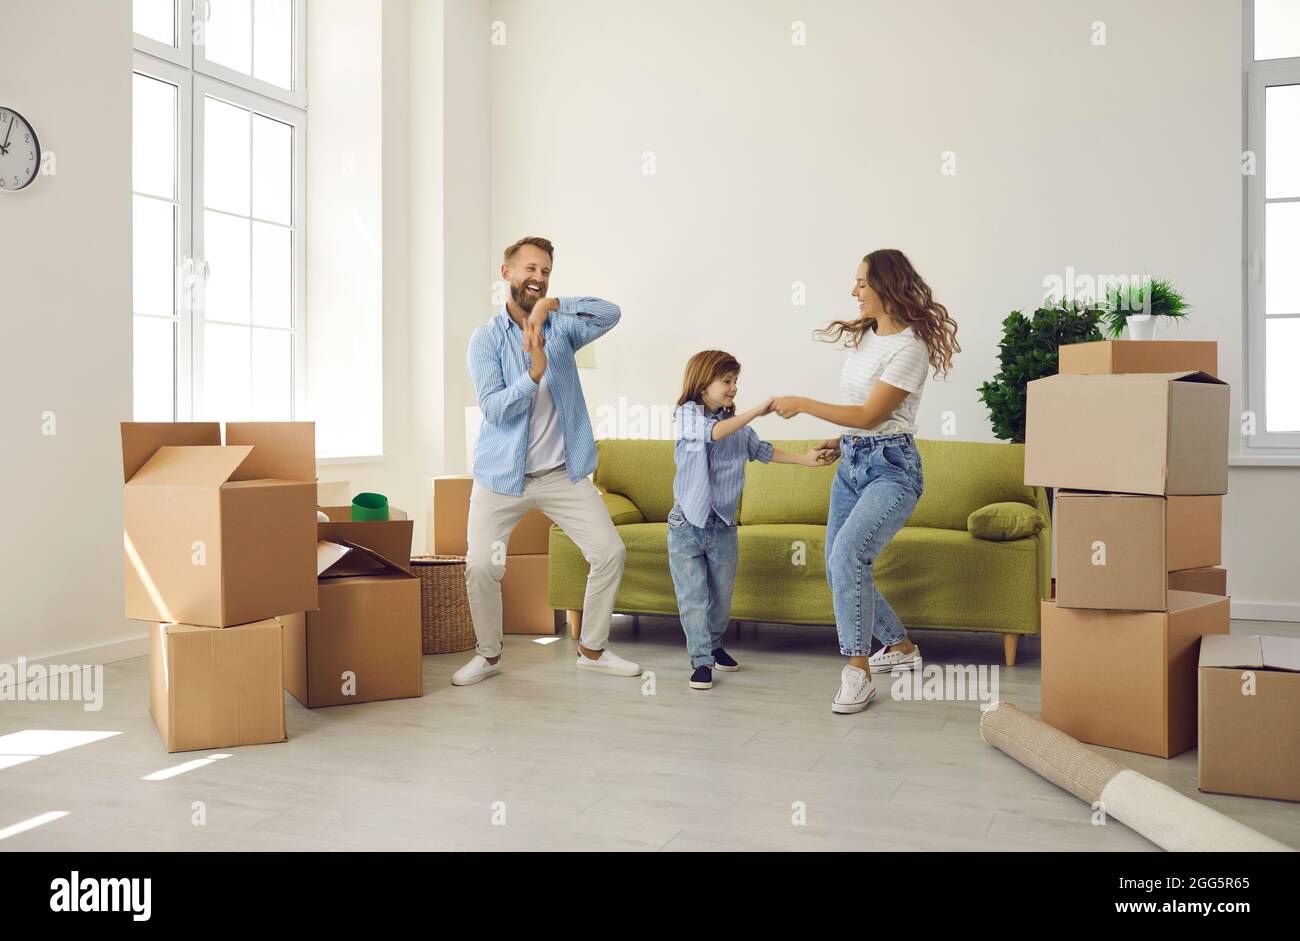 Glückliche Familie, die am Umzugstag mit ausgepackten Boxen im neuen Zuhause Spaß auf dem Zimmer hatte Stockfoto